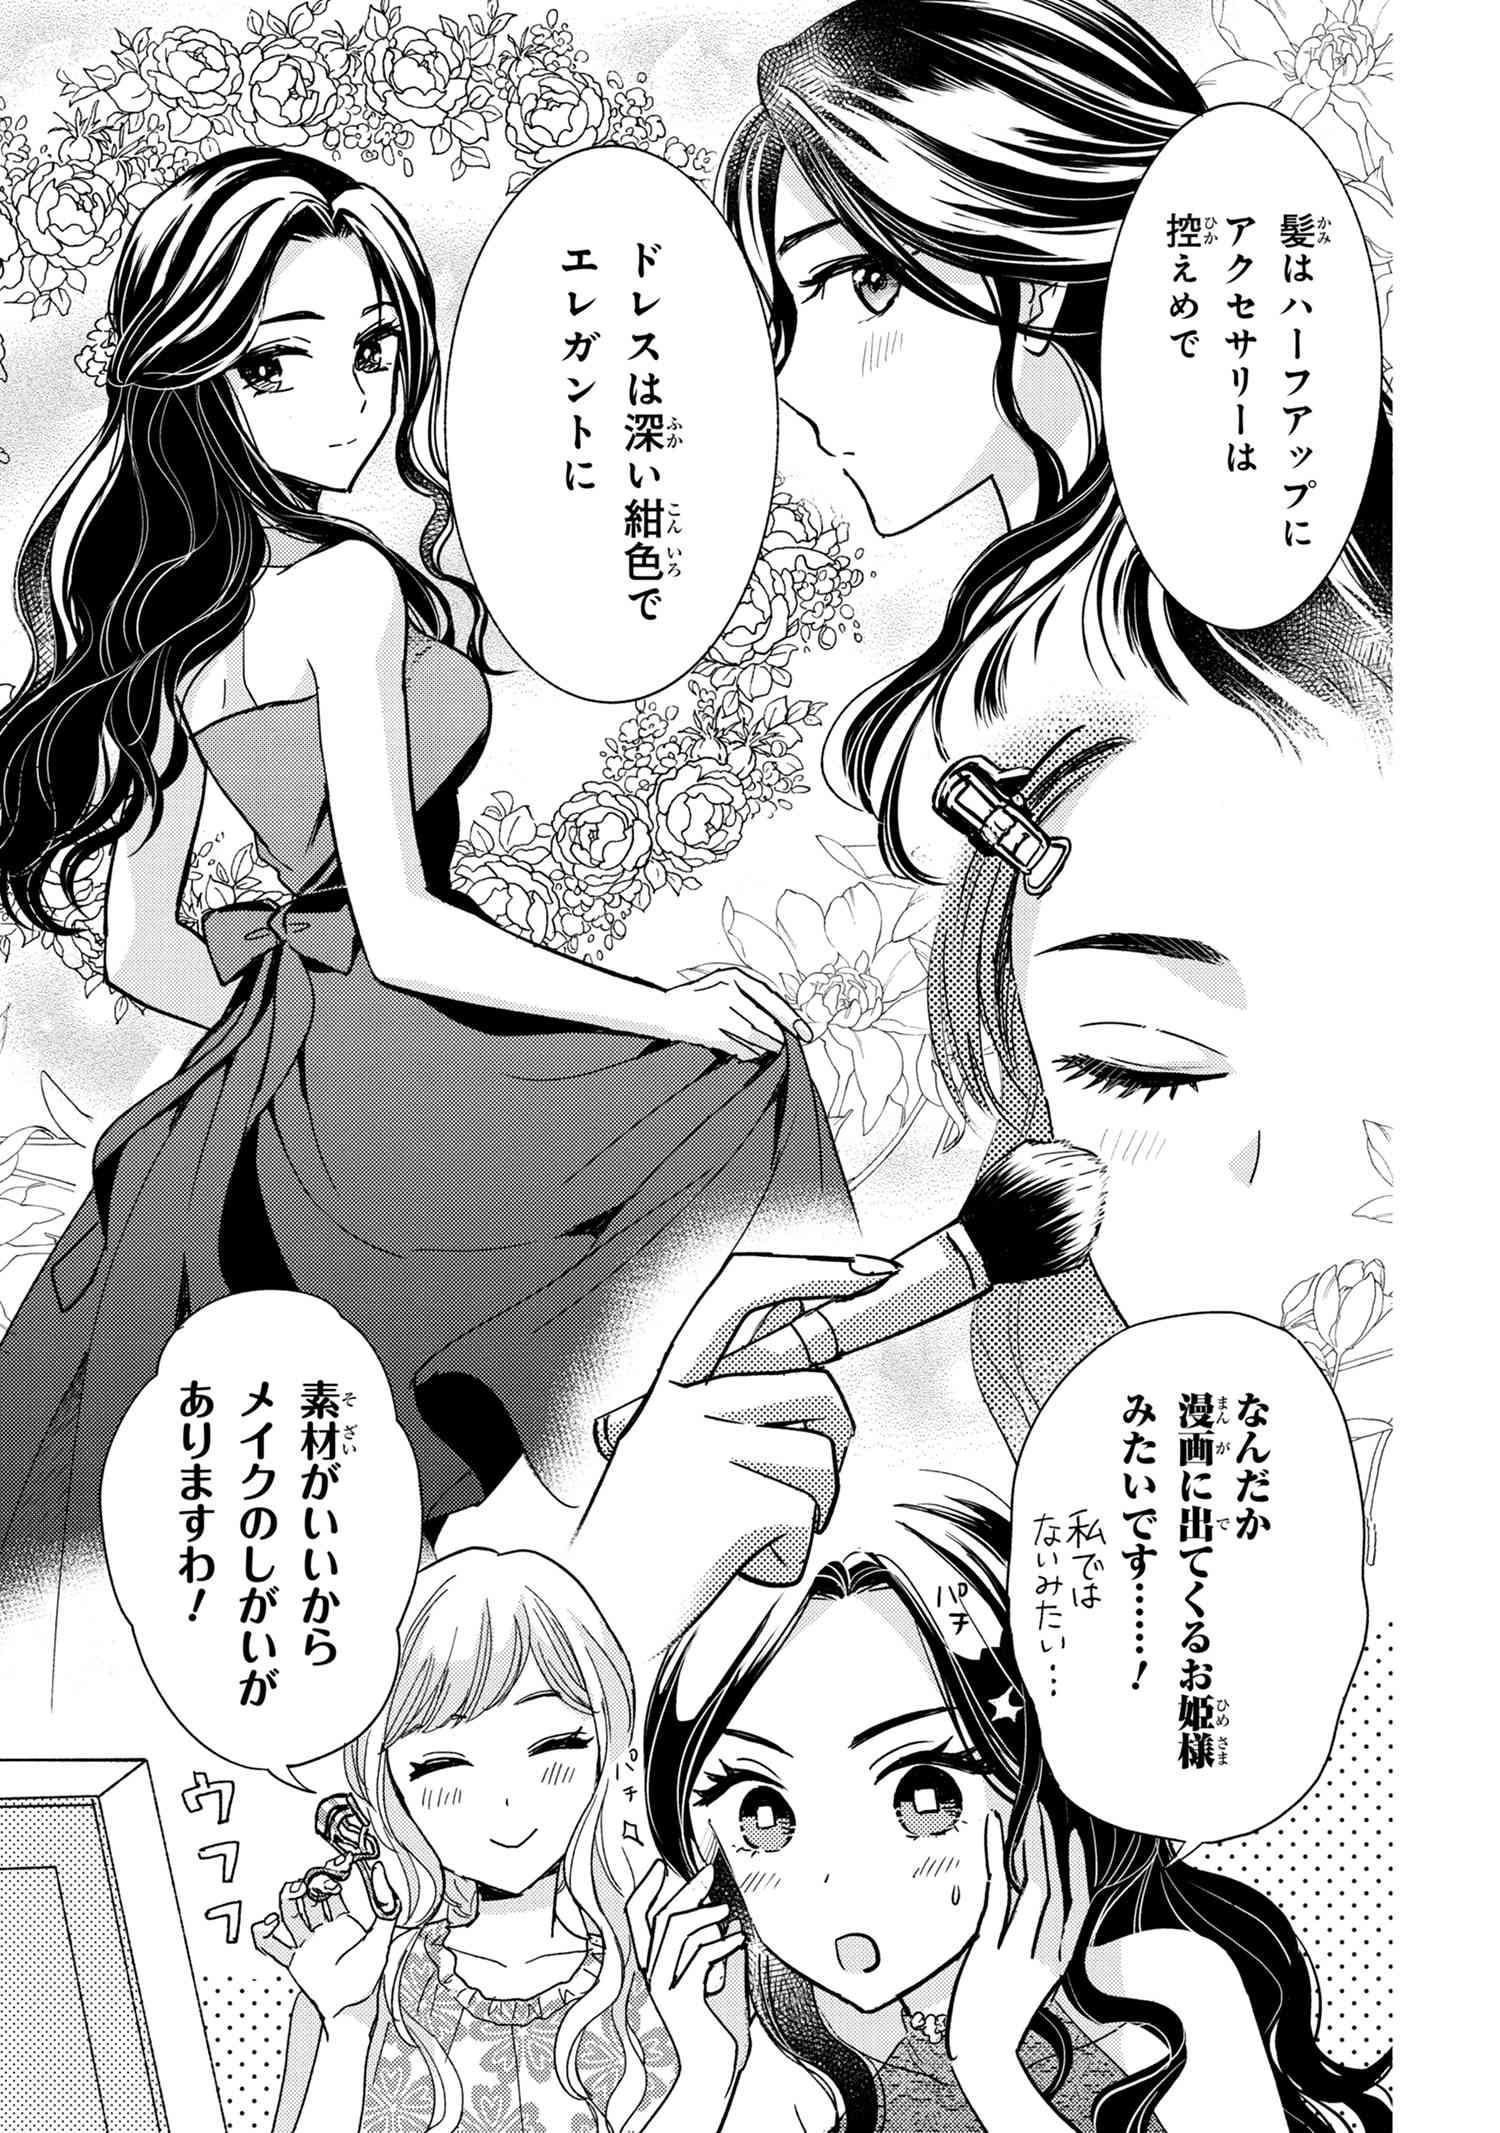 Reiko no Fuugi Akuyaku Reijou to Yobarete imasu ga, tada no Binbou Musume desu - Chapter 13-5 - Page 2